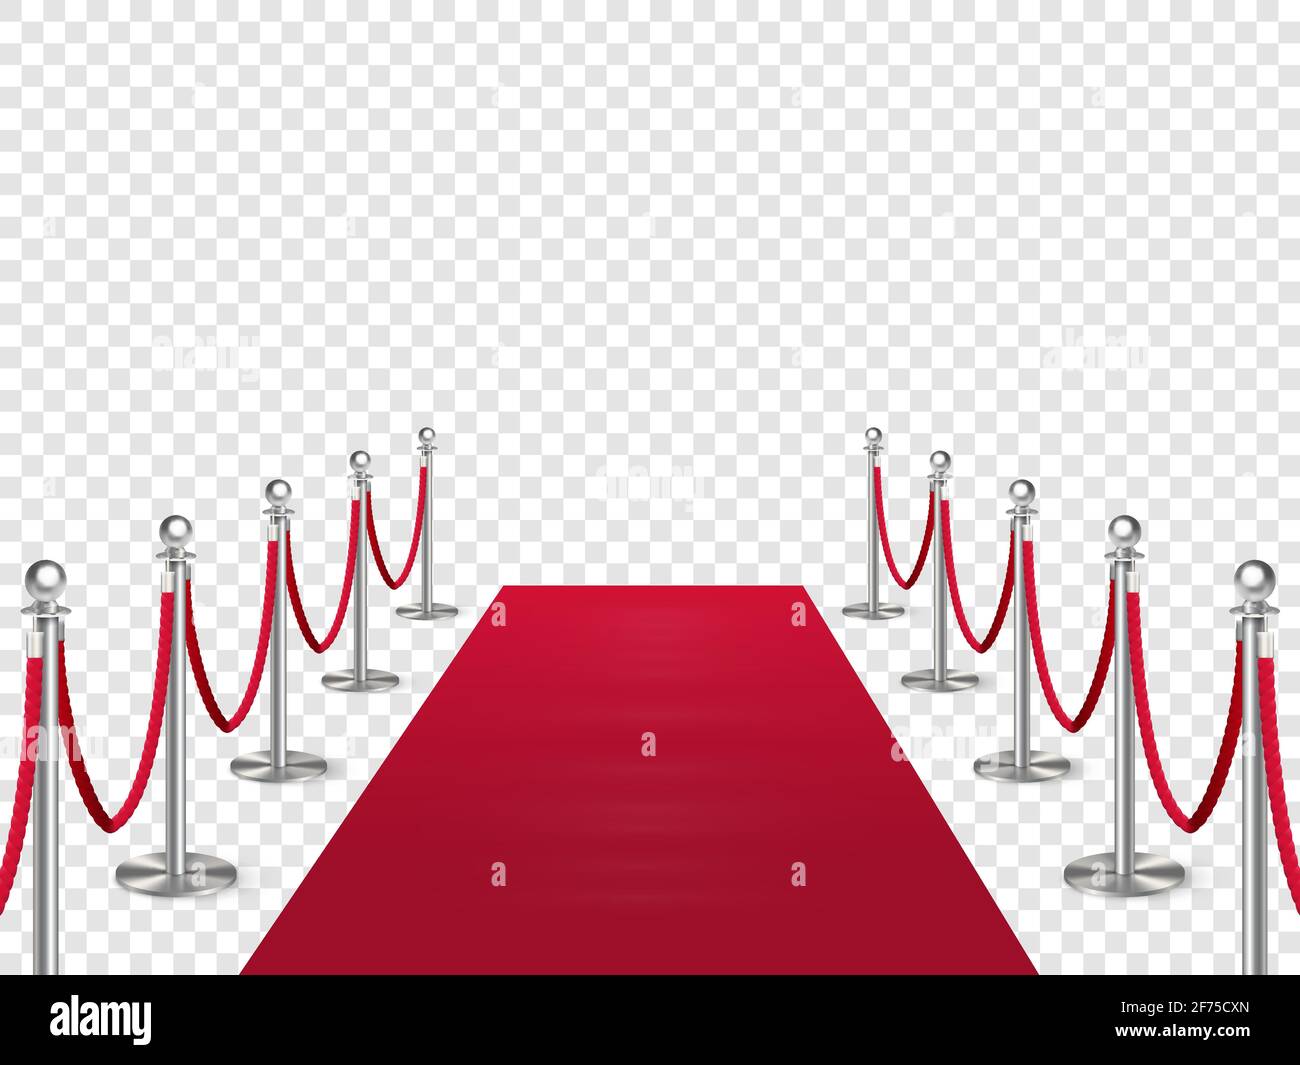 Roter Teppich mit Metallsäulenschutz isoliert auf transparentem Hintergrund. Unterhaltung, Festival-Event, Belohnungszeremonie. Design für Kinopremiere Cele Stock Vektor